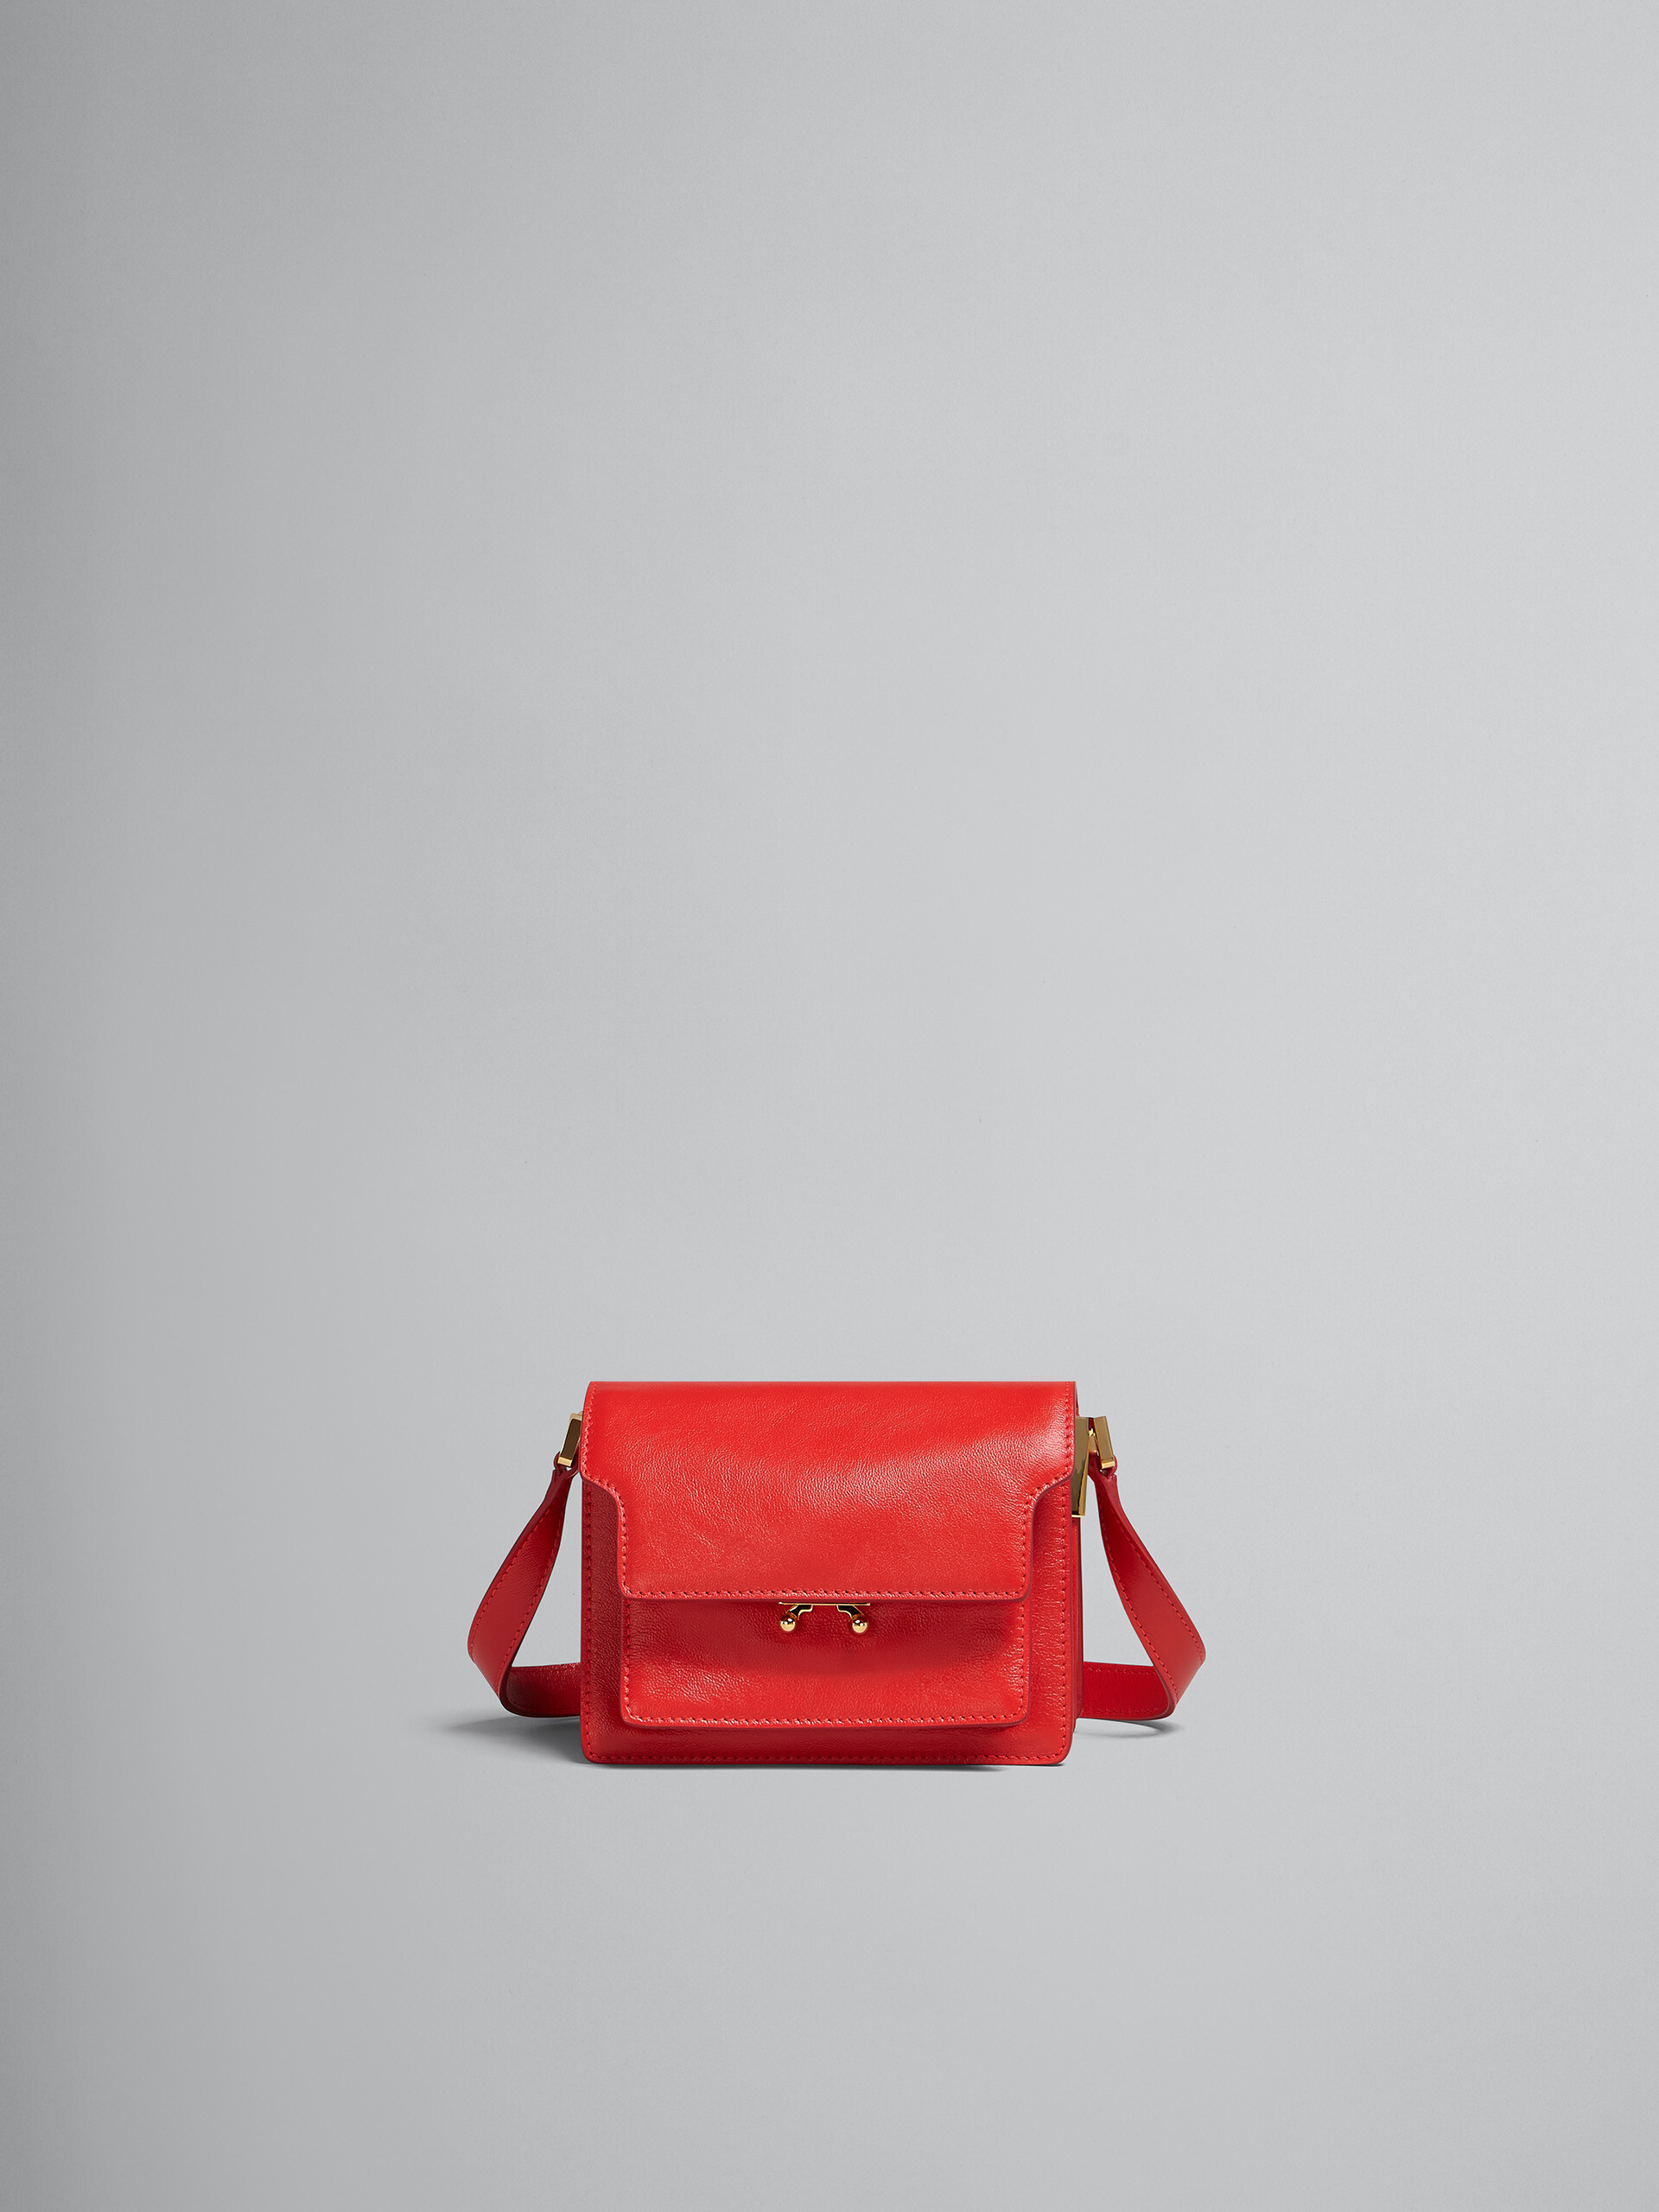 TRUNK SOFT bag mini in pelle rossa - Borse a spalla - Image 1